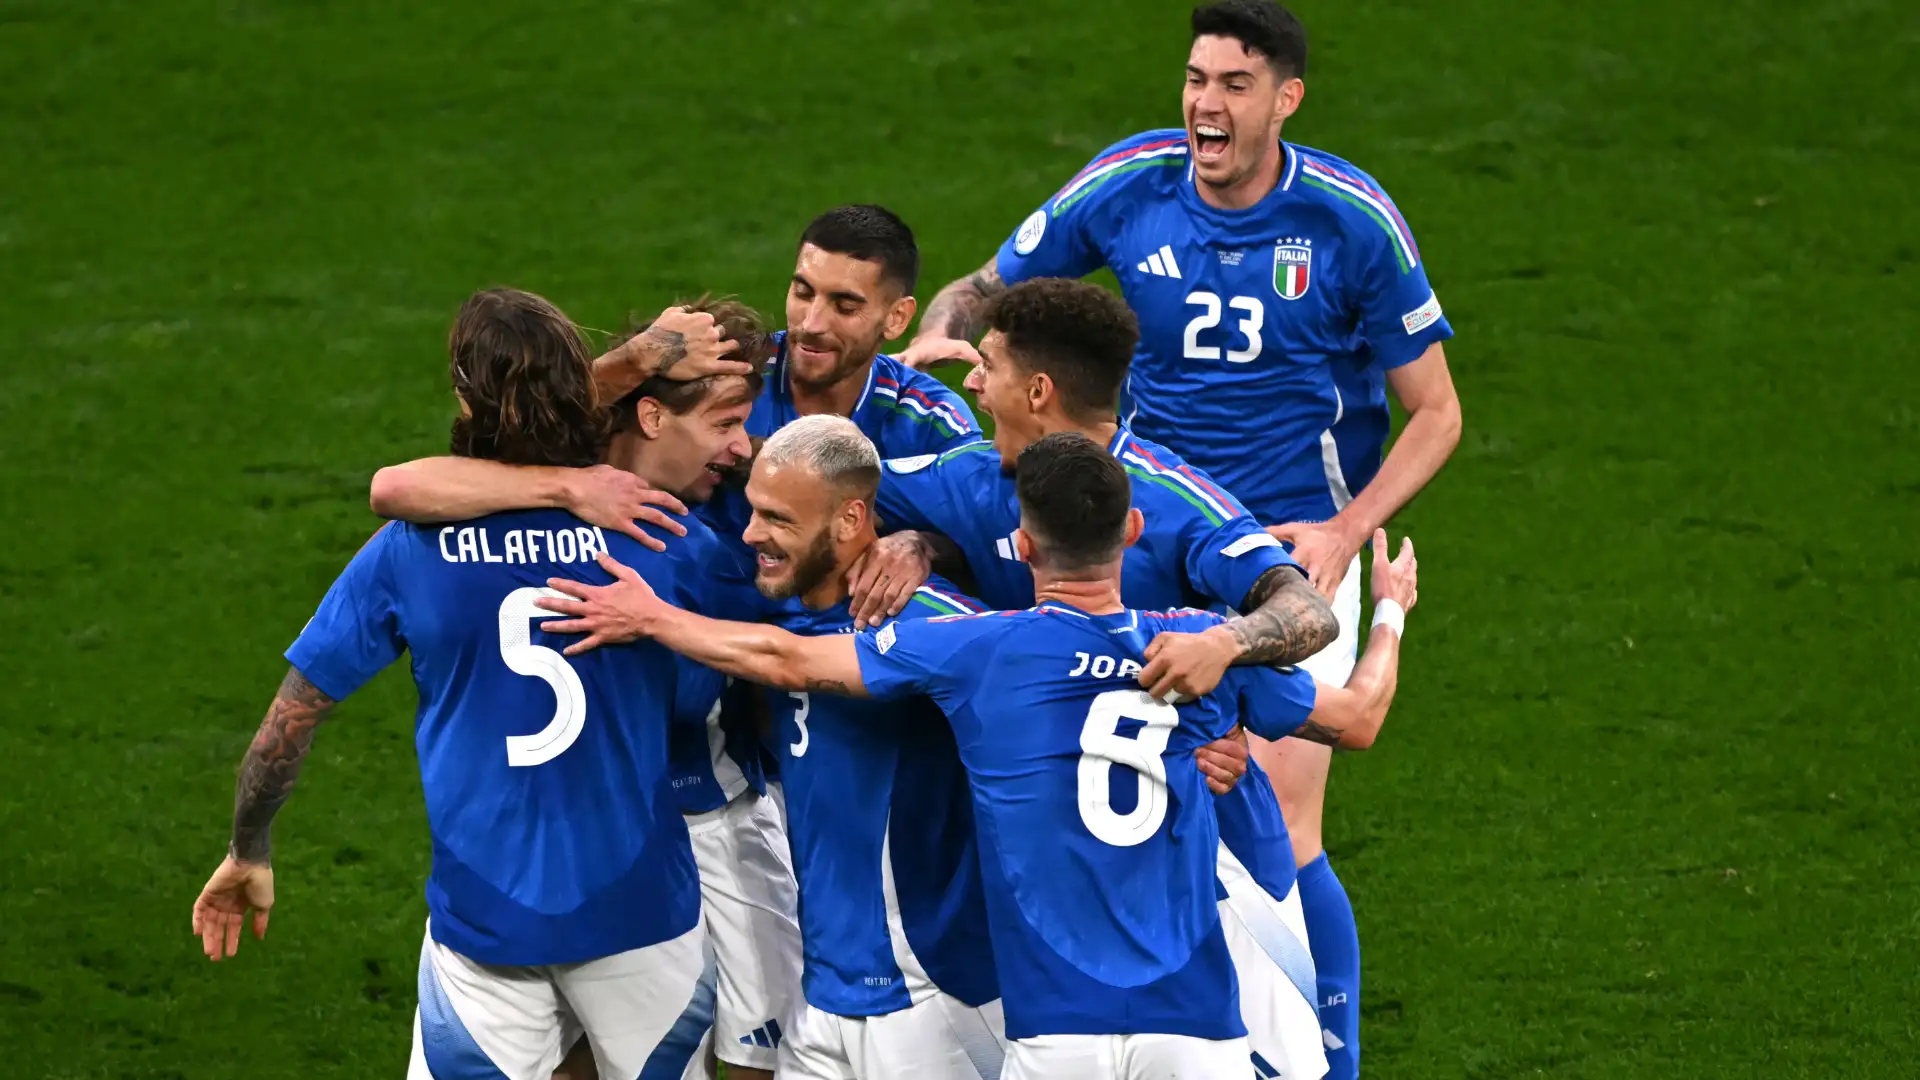 Italia nerAzzurra, Barella e Bastoni a segno: la storia che coinvolge l'Inter